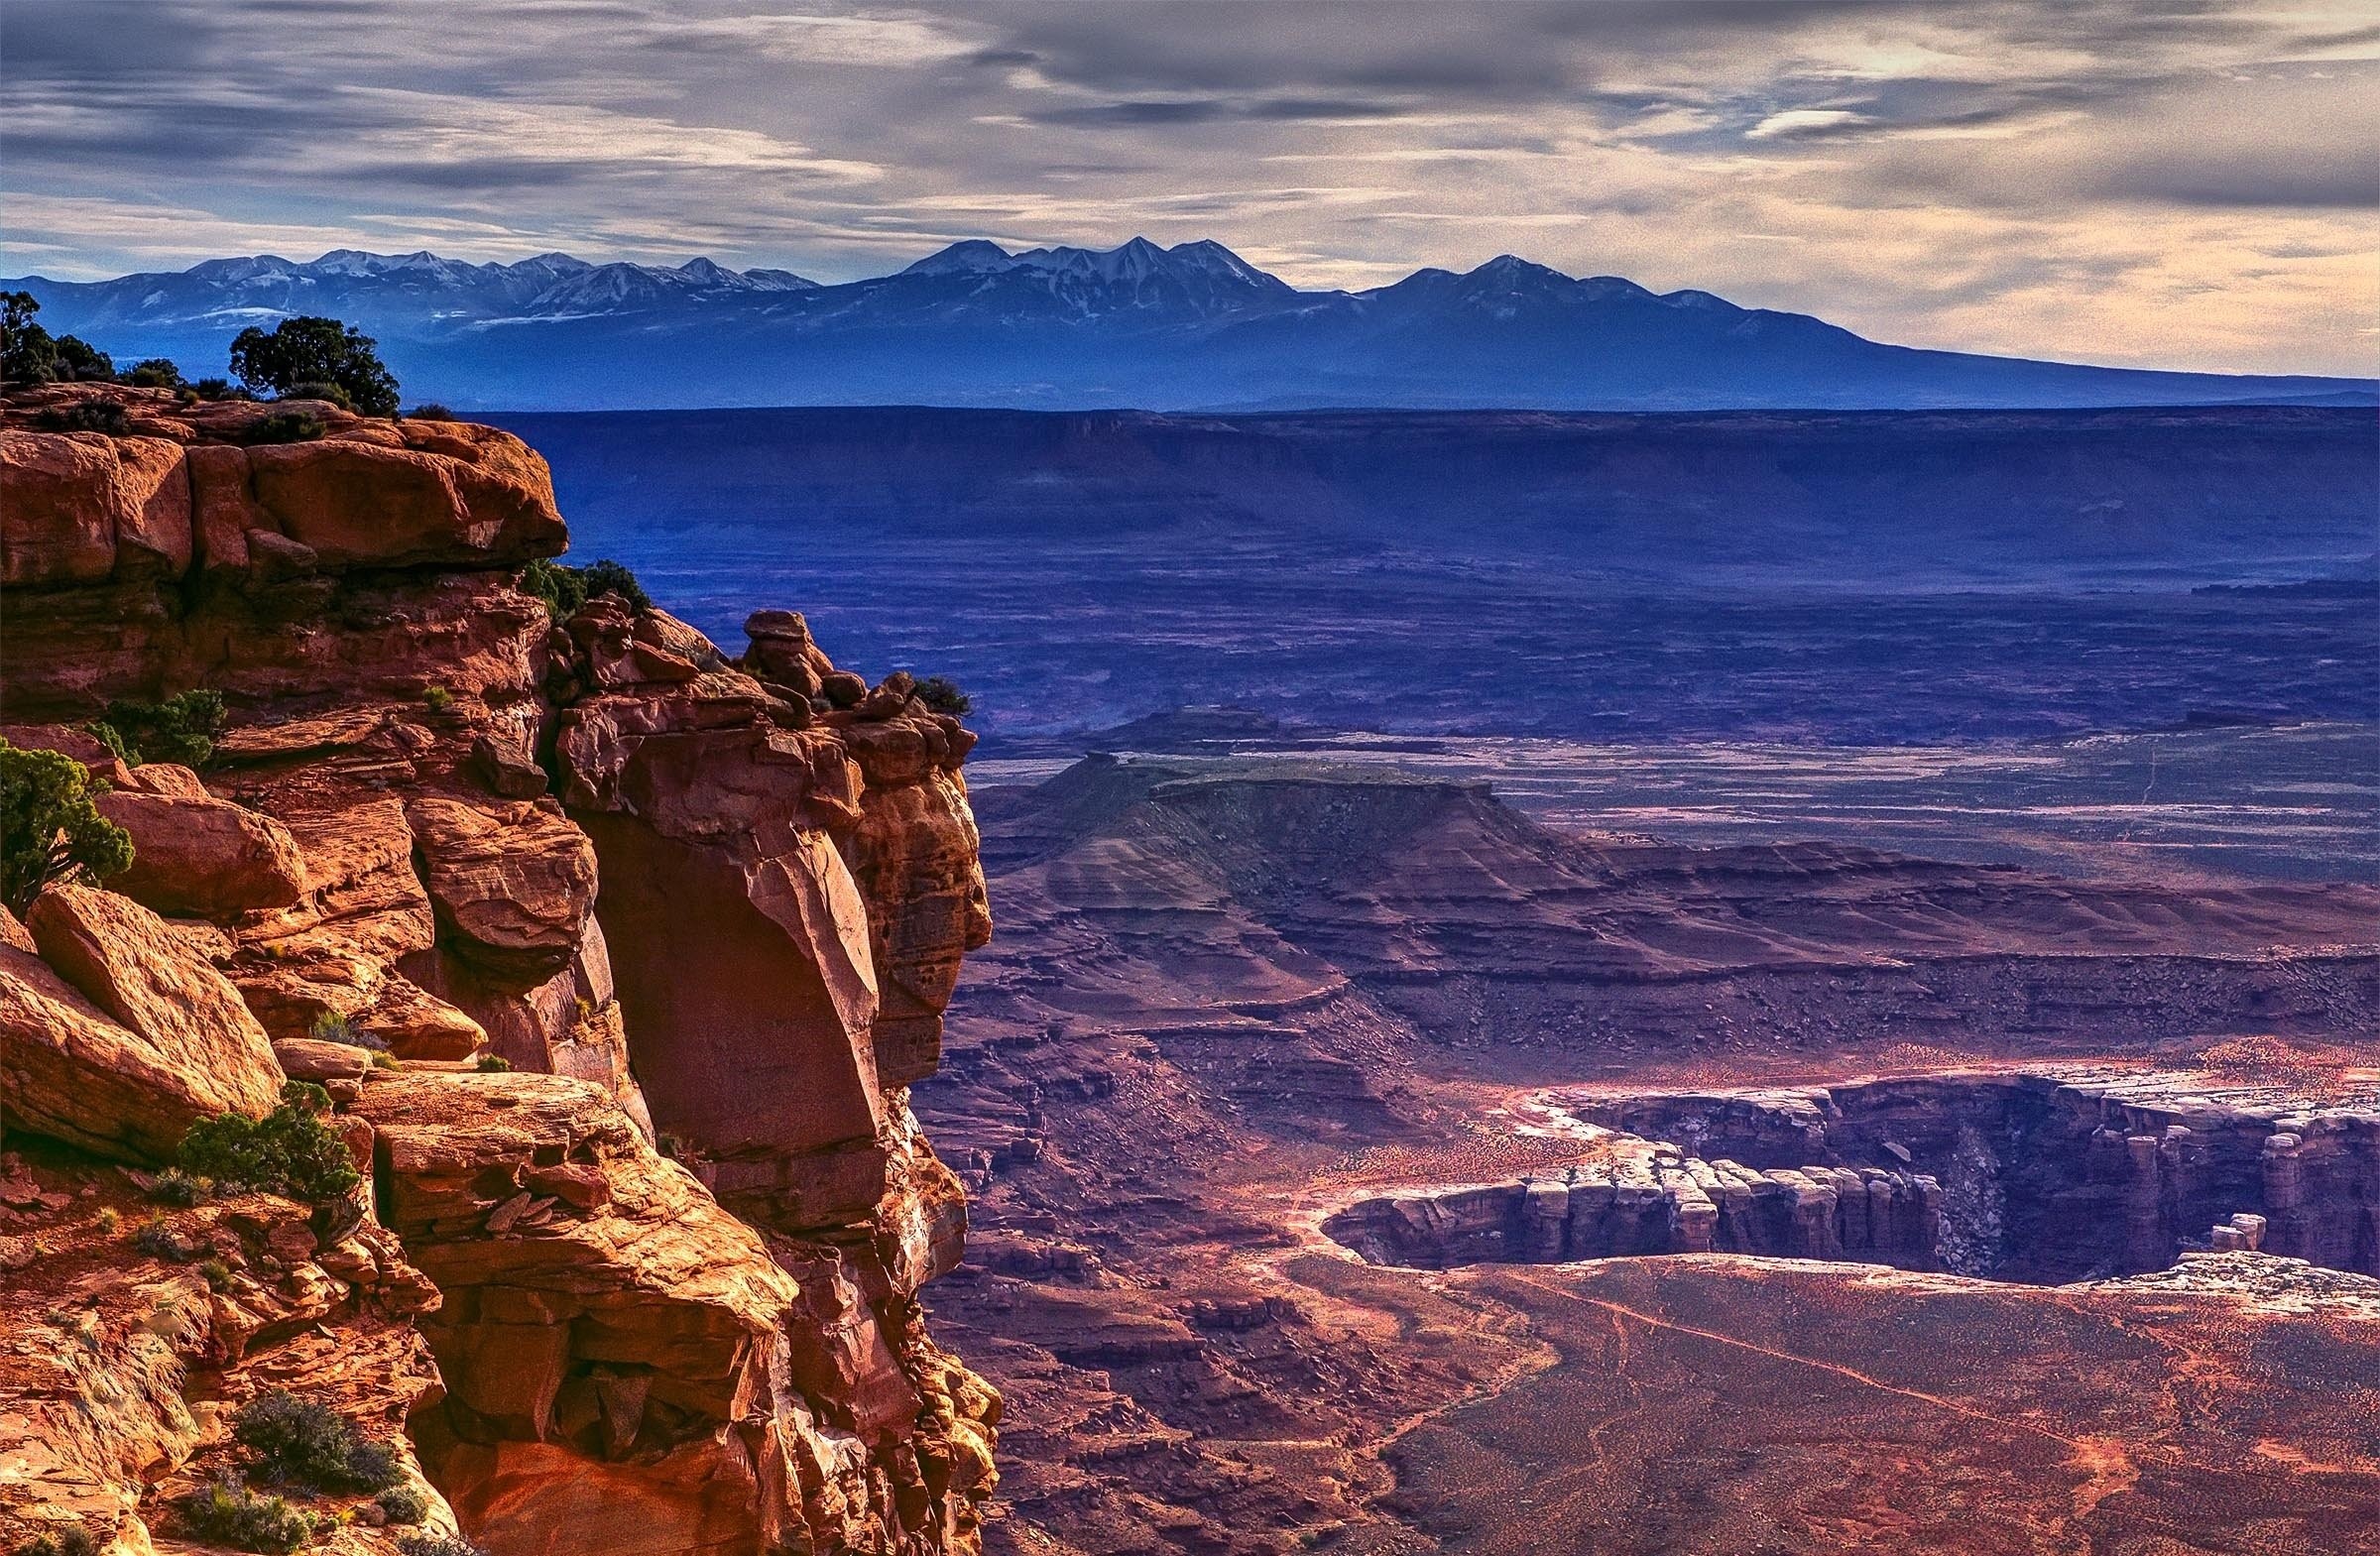 2400x1569 Park near Moab Utah desert landscape mountains wallpaper background  